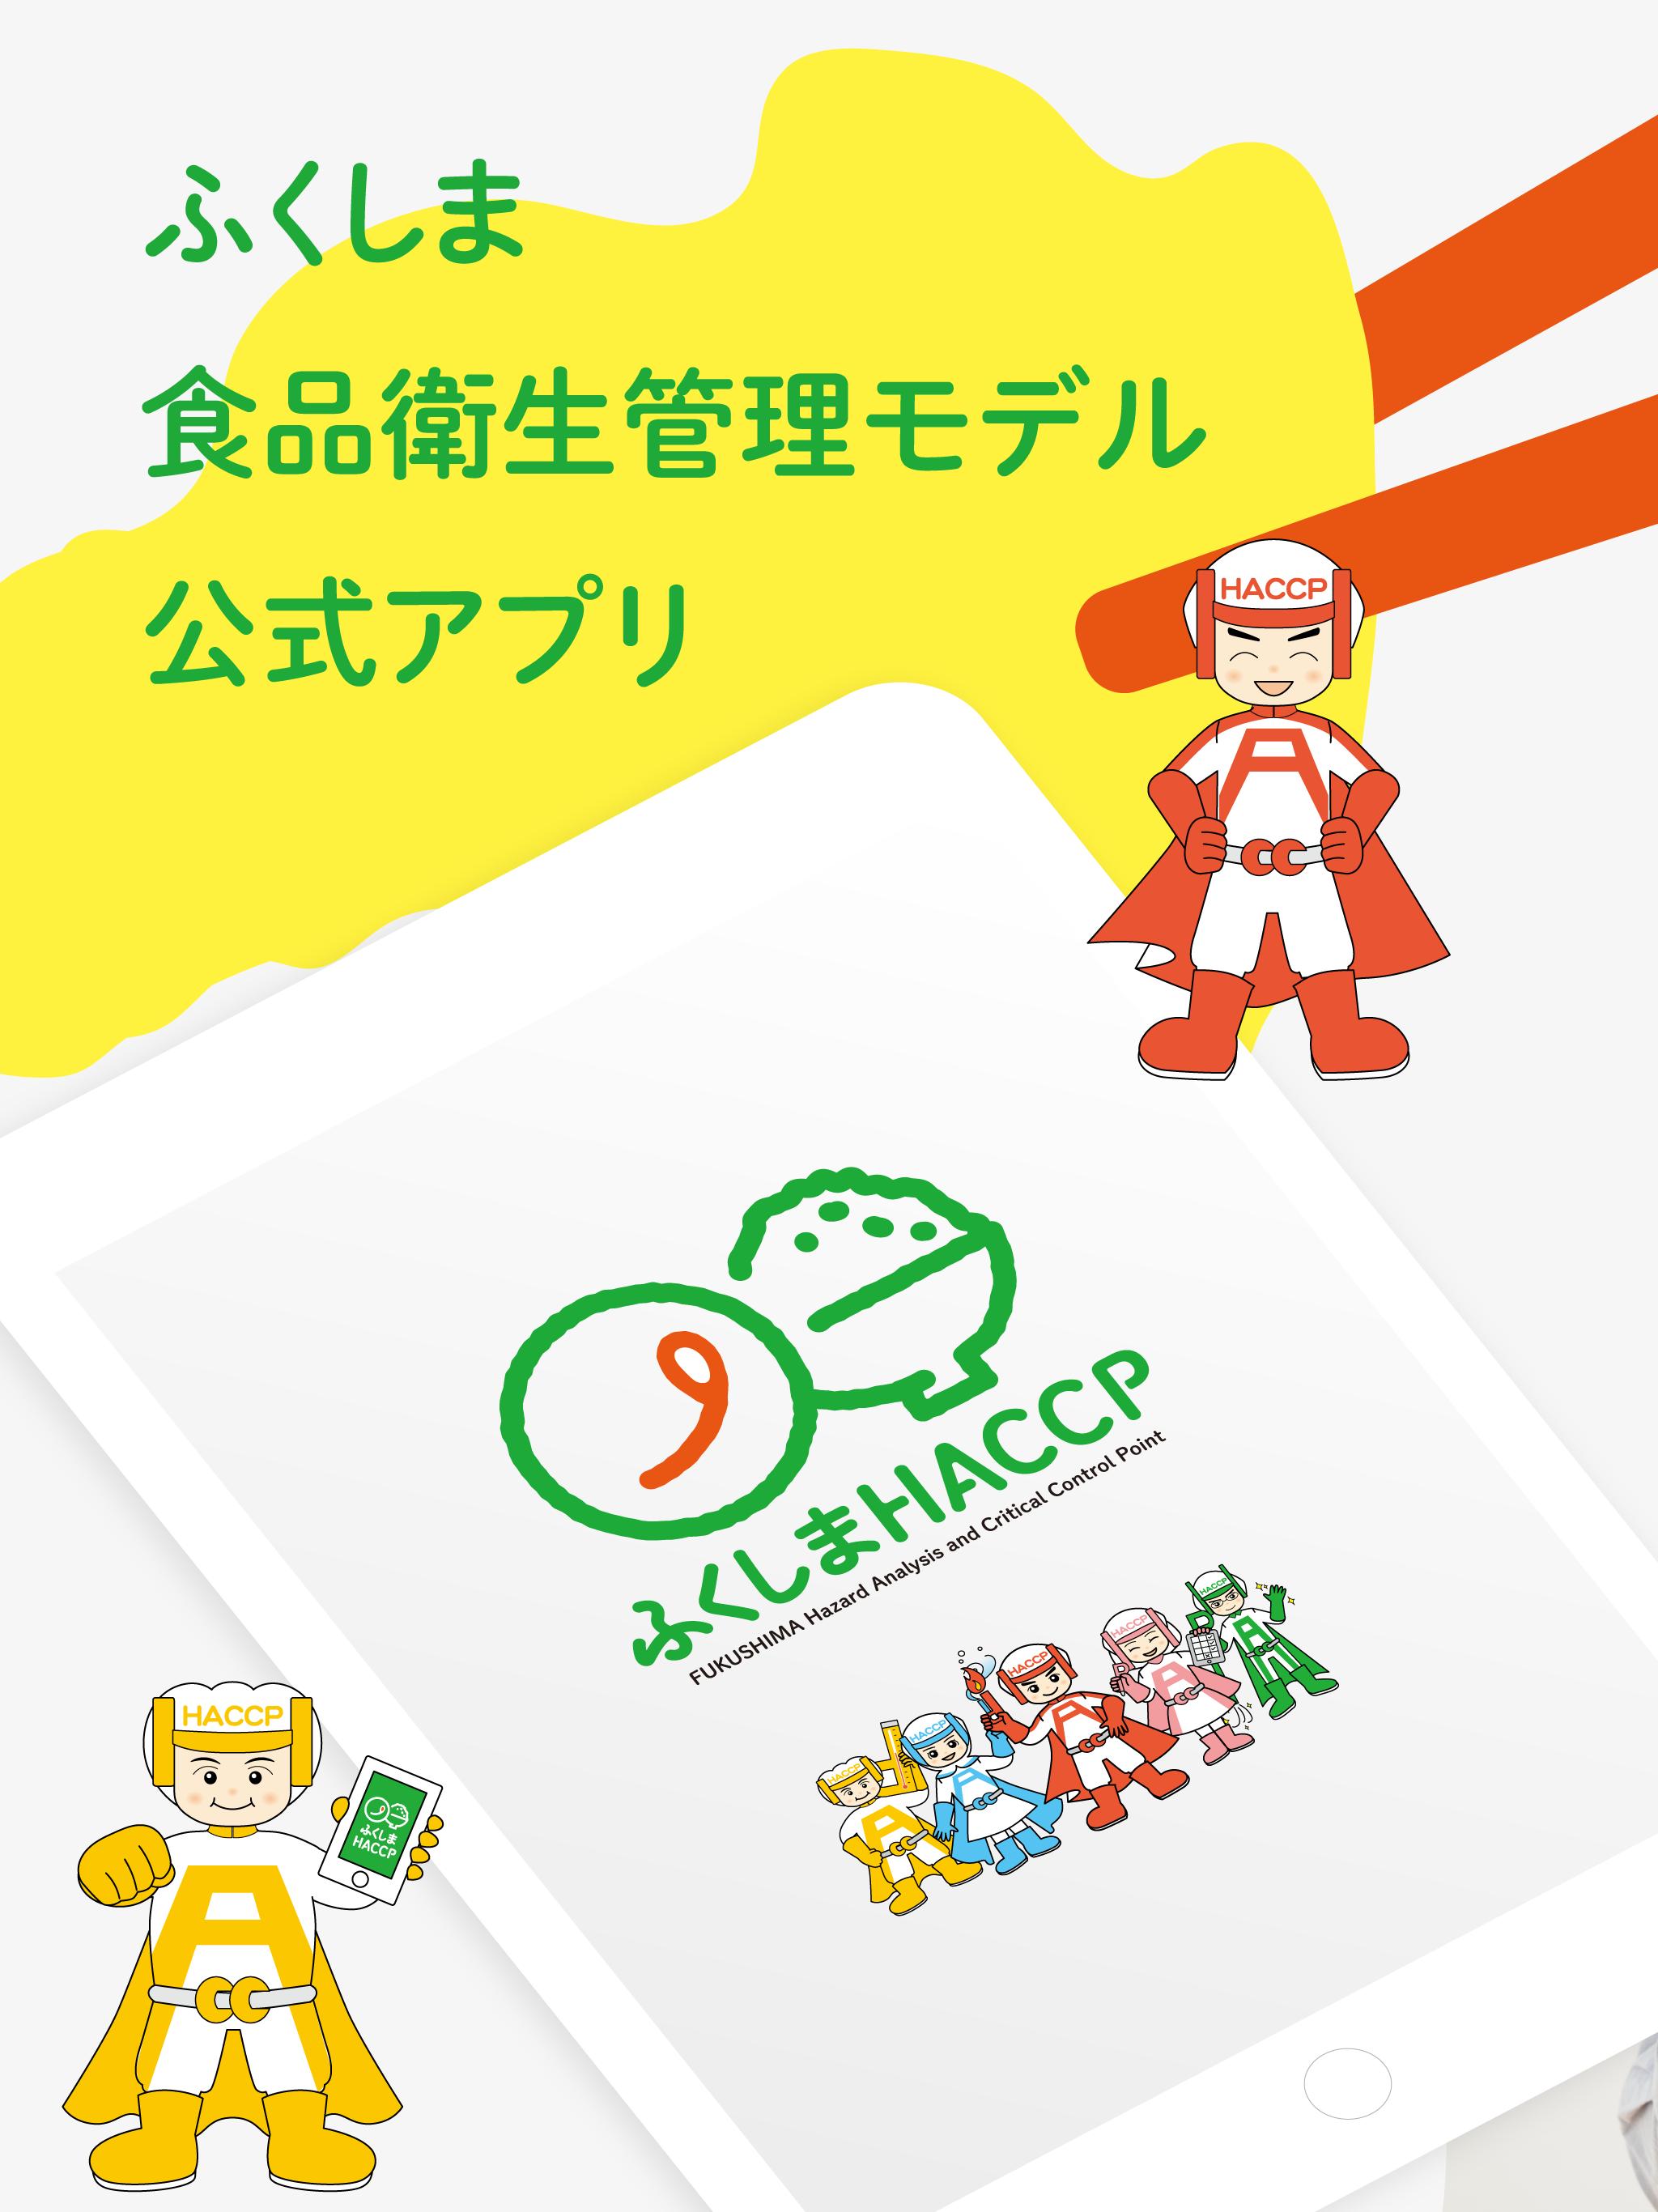 ふくしまHACCPアプリ 1.0.10 Screenshot 7